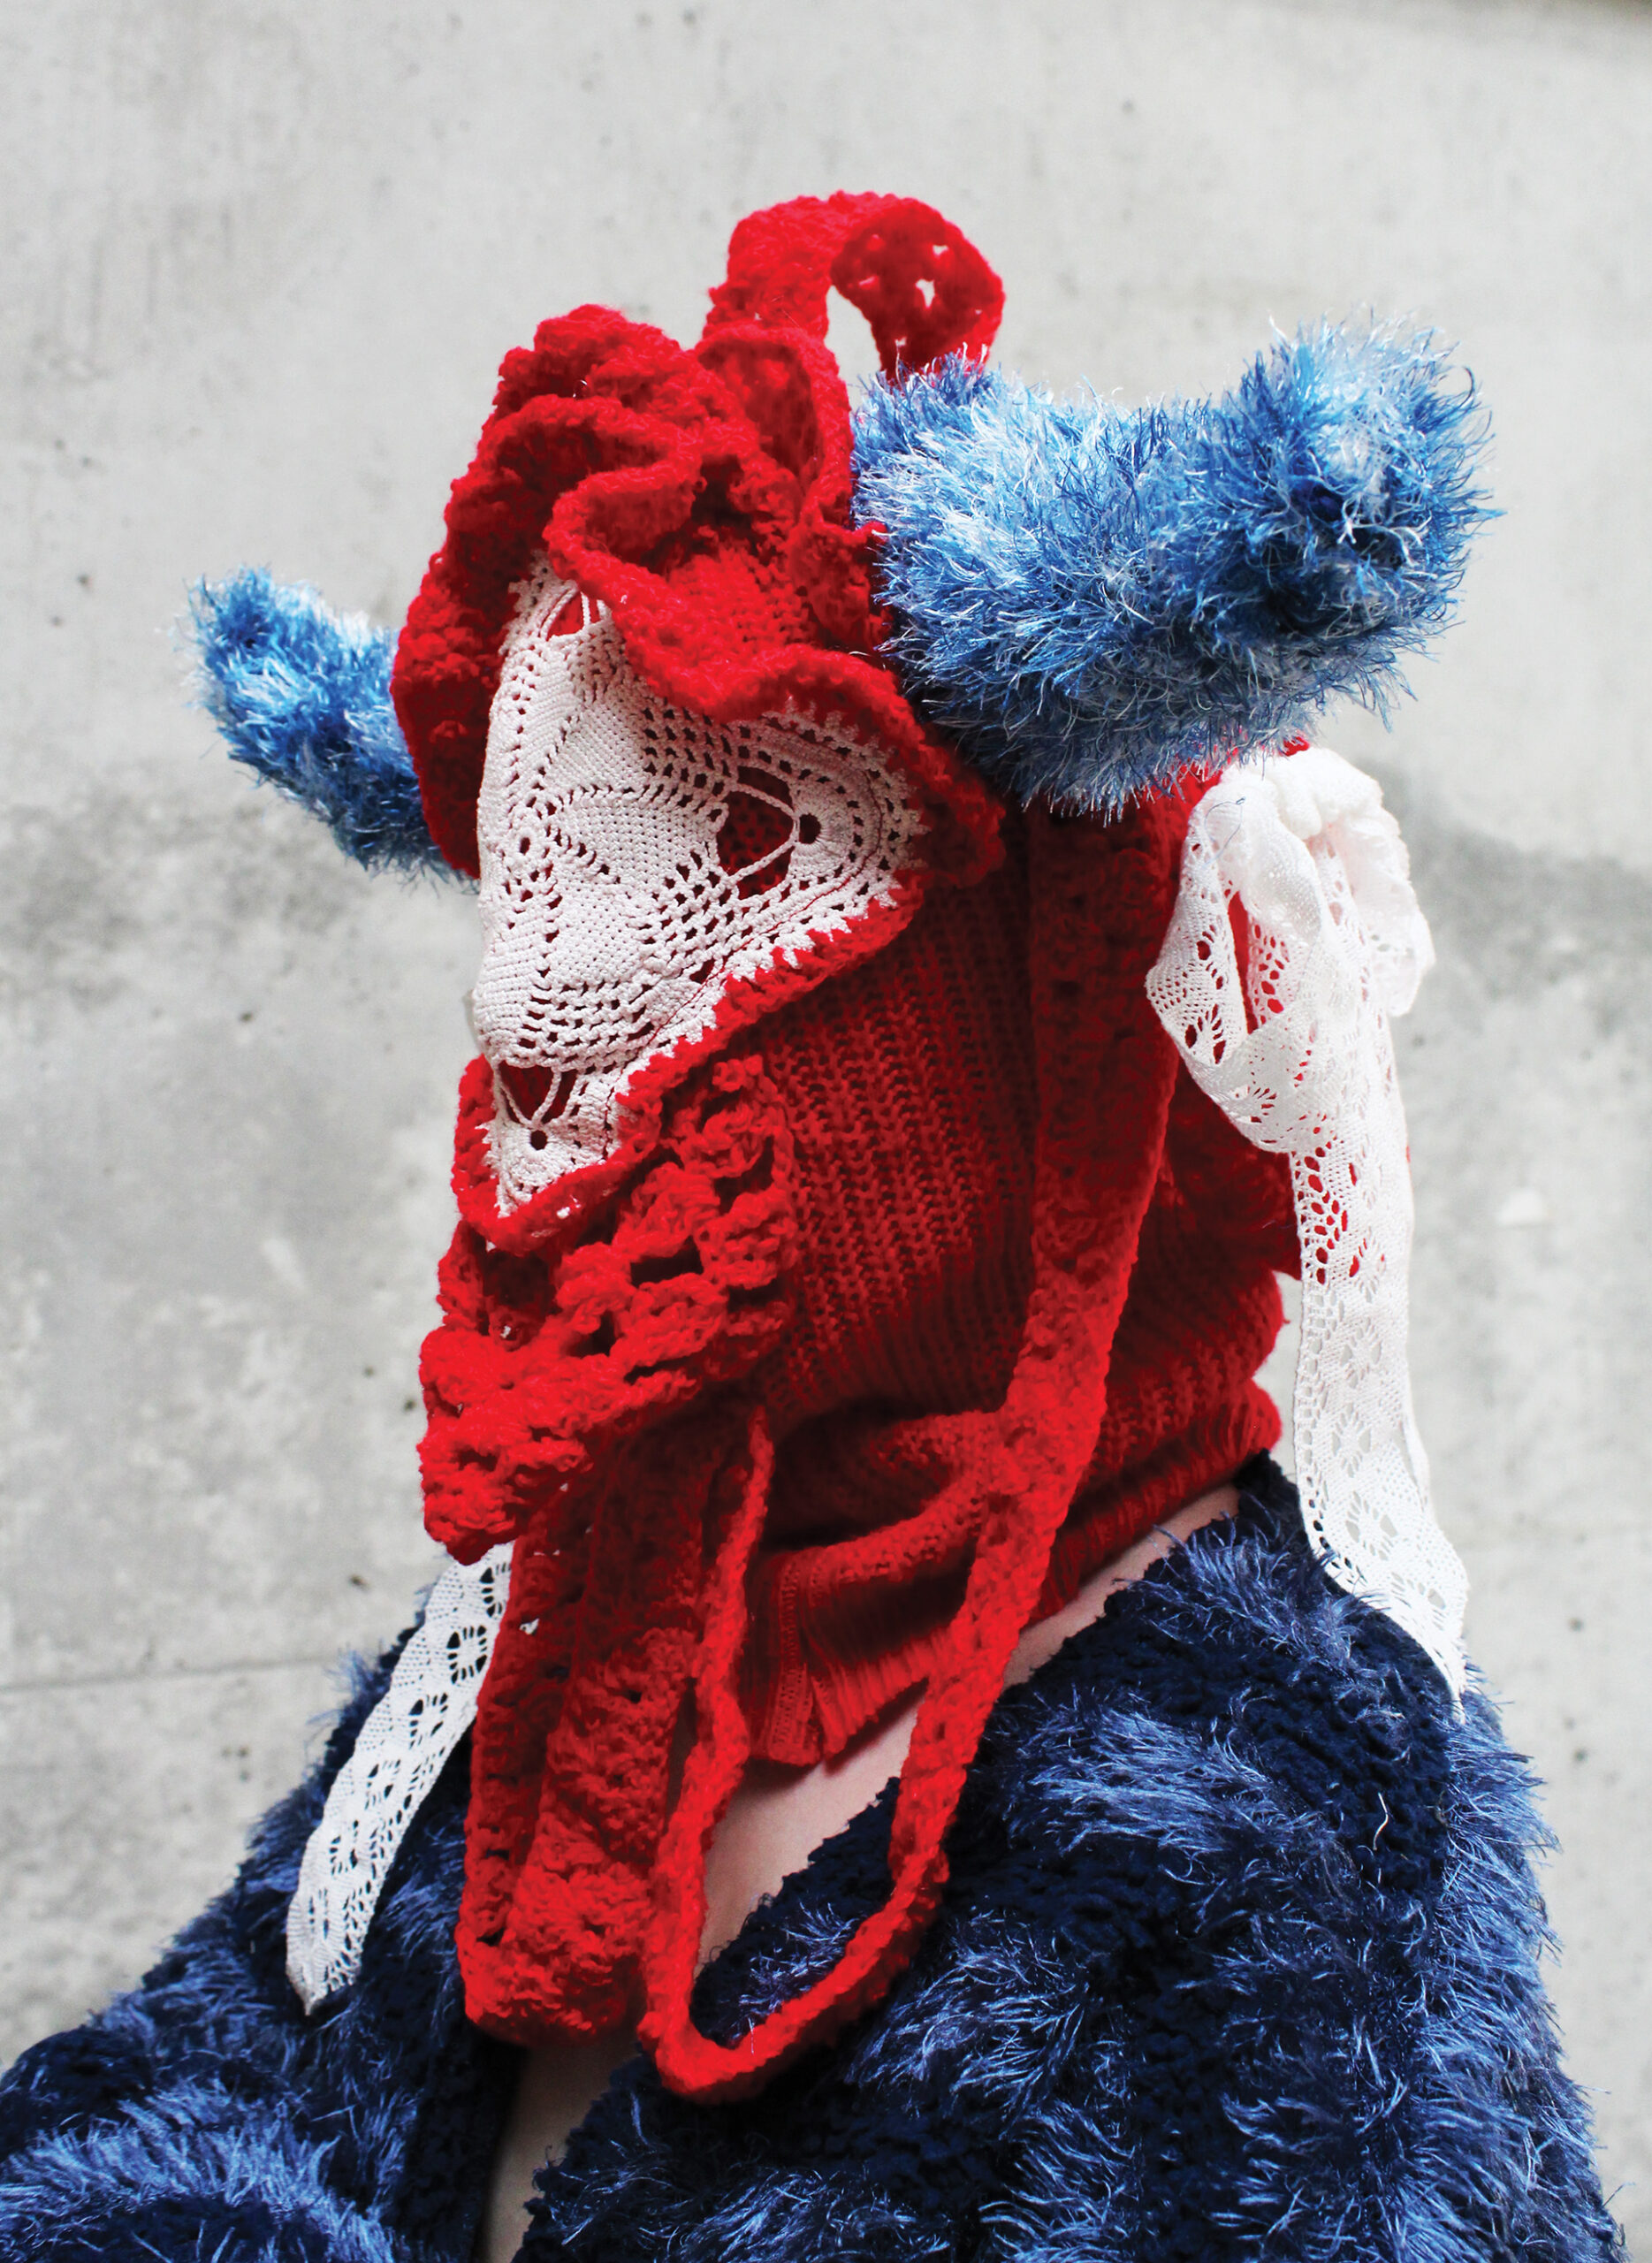 Portret człowieka w formie zakrywającej twarz, głowę i ramiona. Czerwona kominiarka z białą serwetą na twarzy i niebieskimi rogami. Na ramionach niebieski sweter w granatowe pasy.